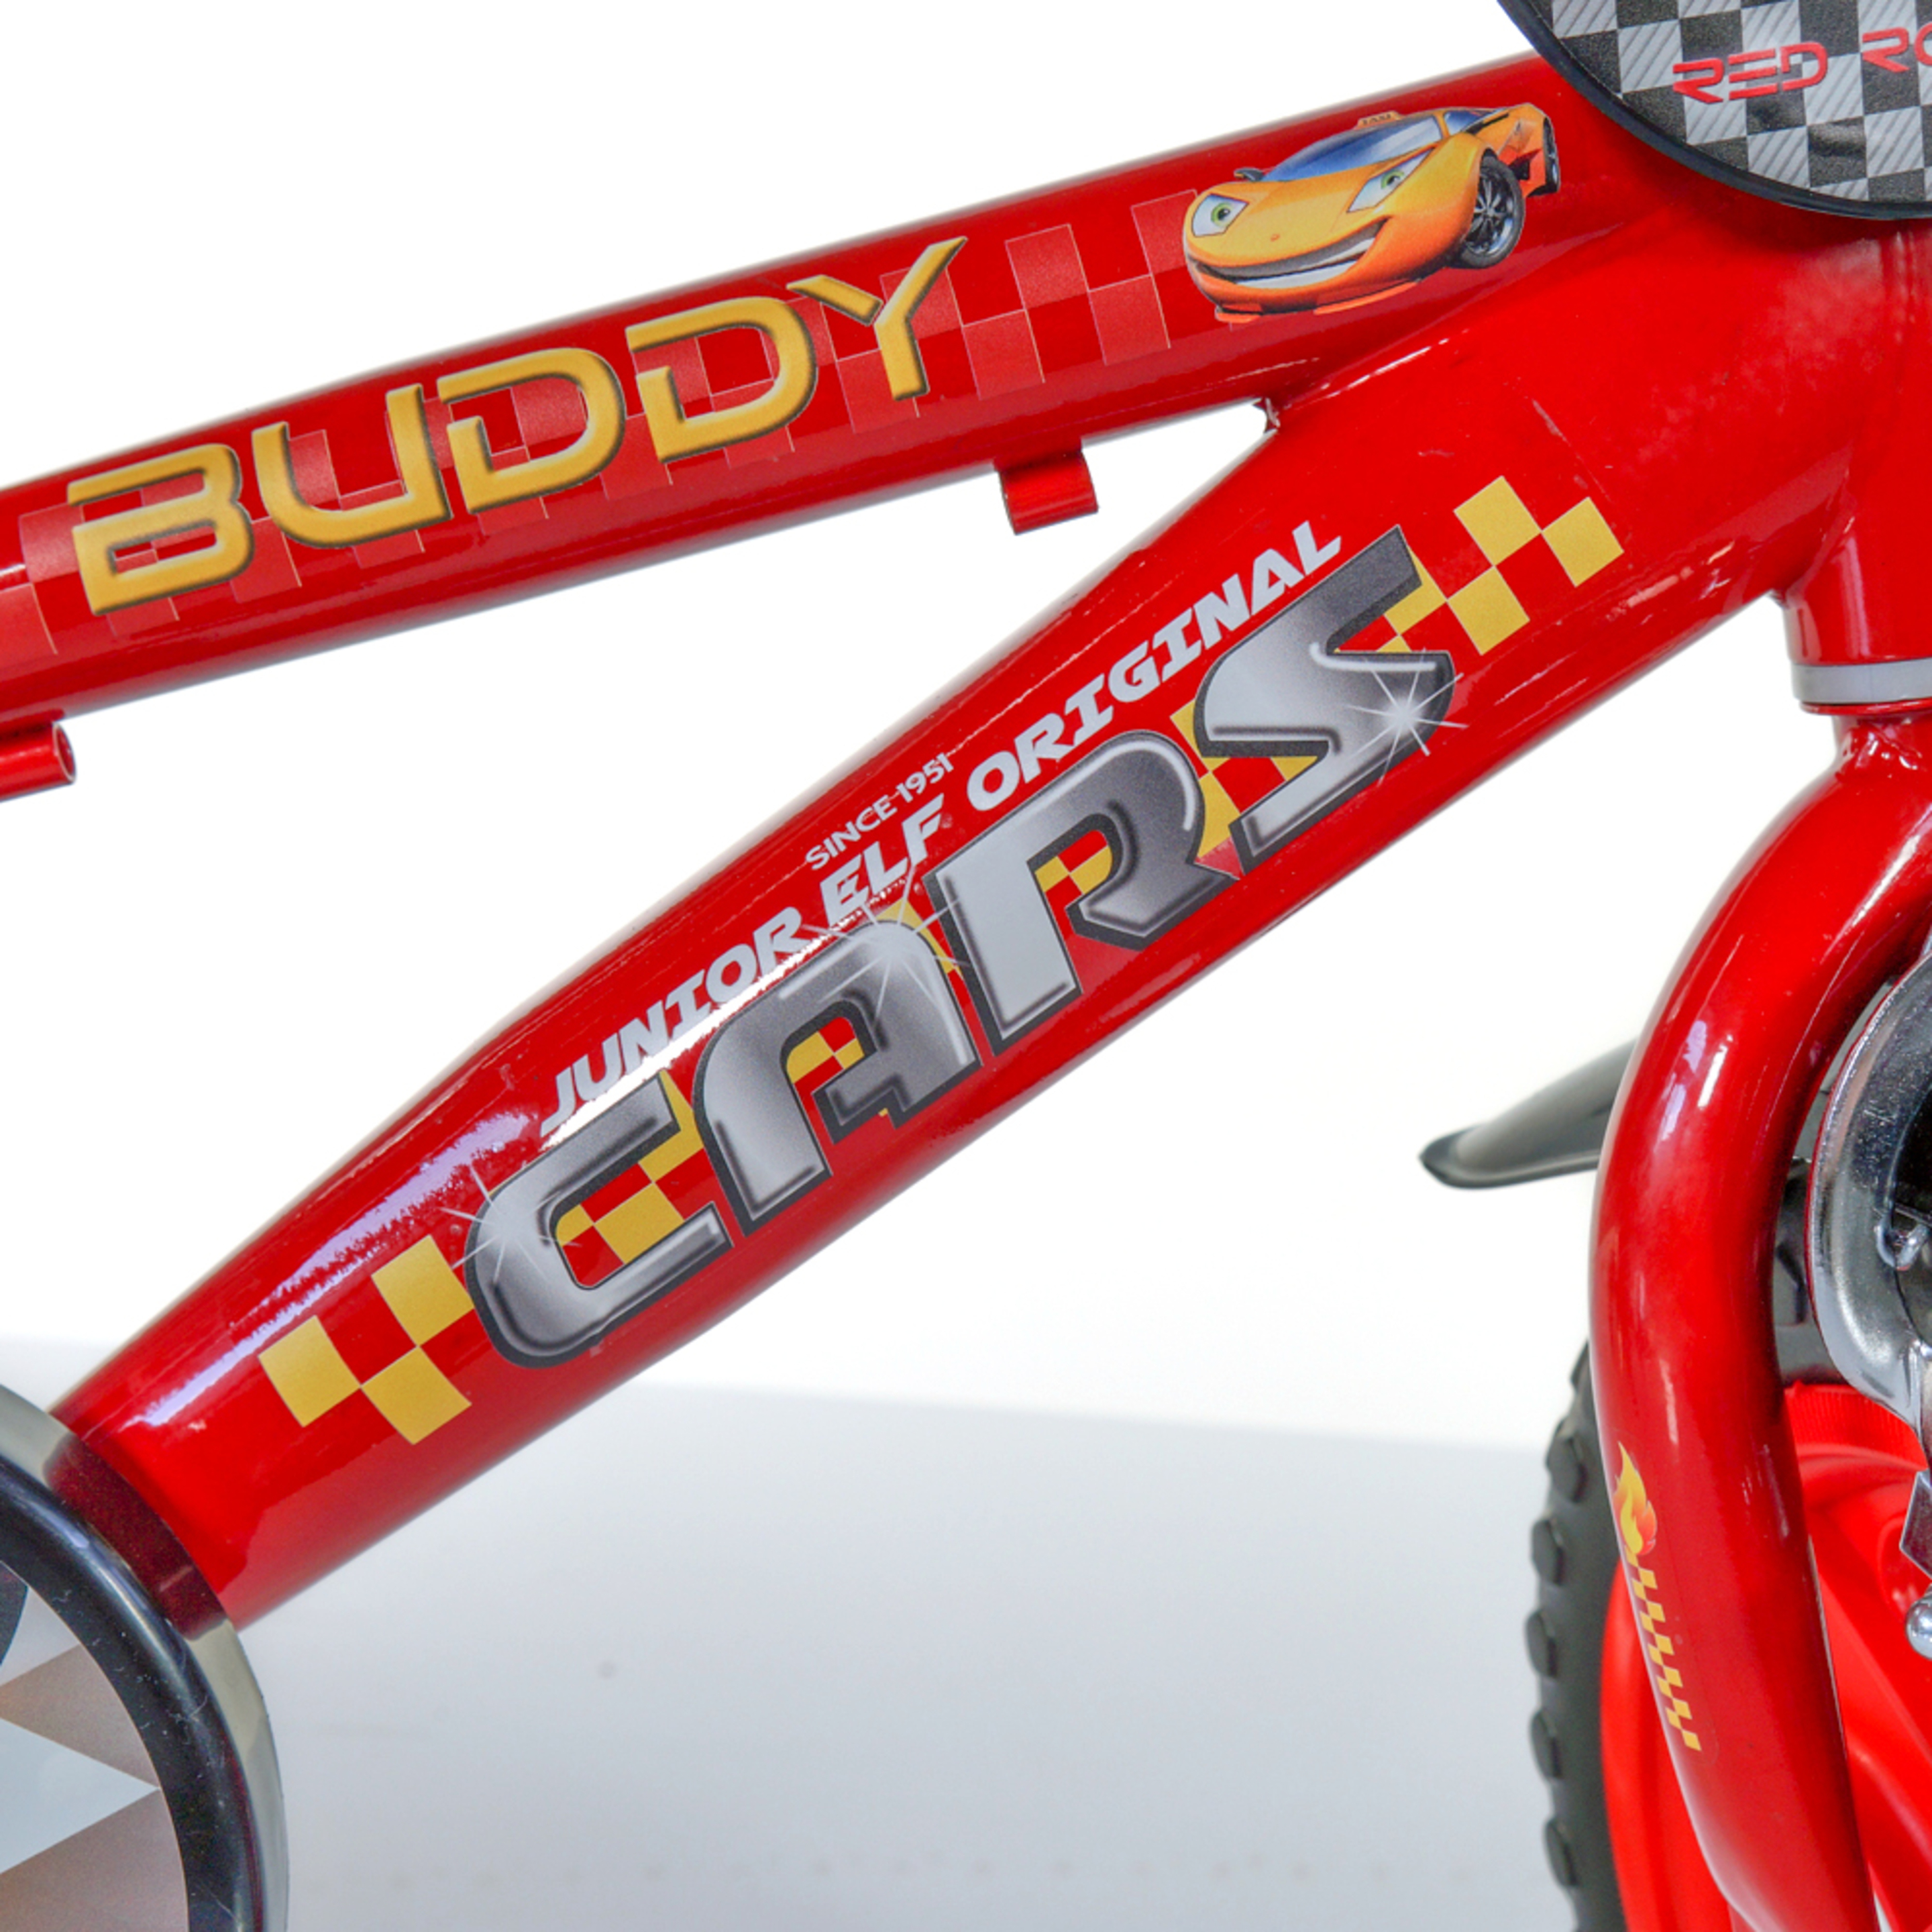 Bicicleta Criança Buddy Cars 12 Polegadas 3-5 Anos - Vermelho | Sport Zone MKP